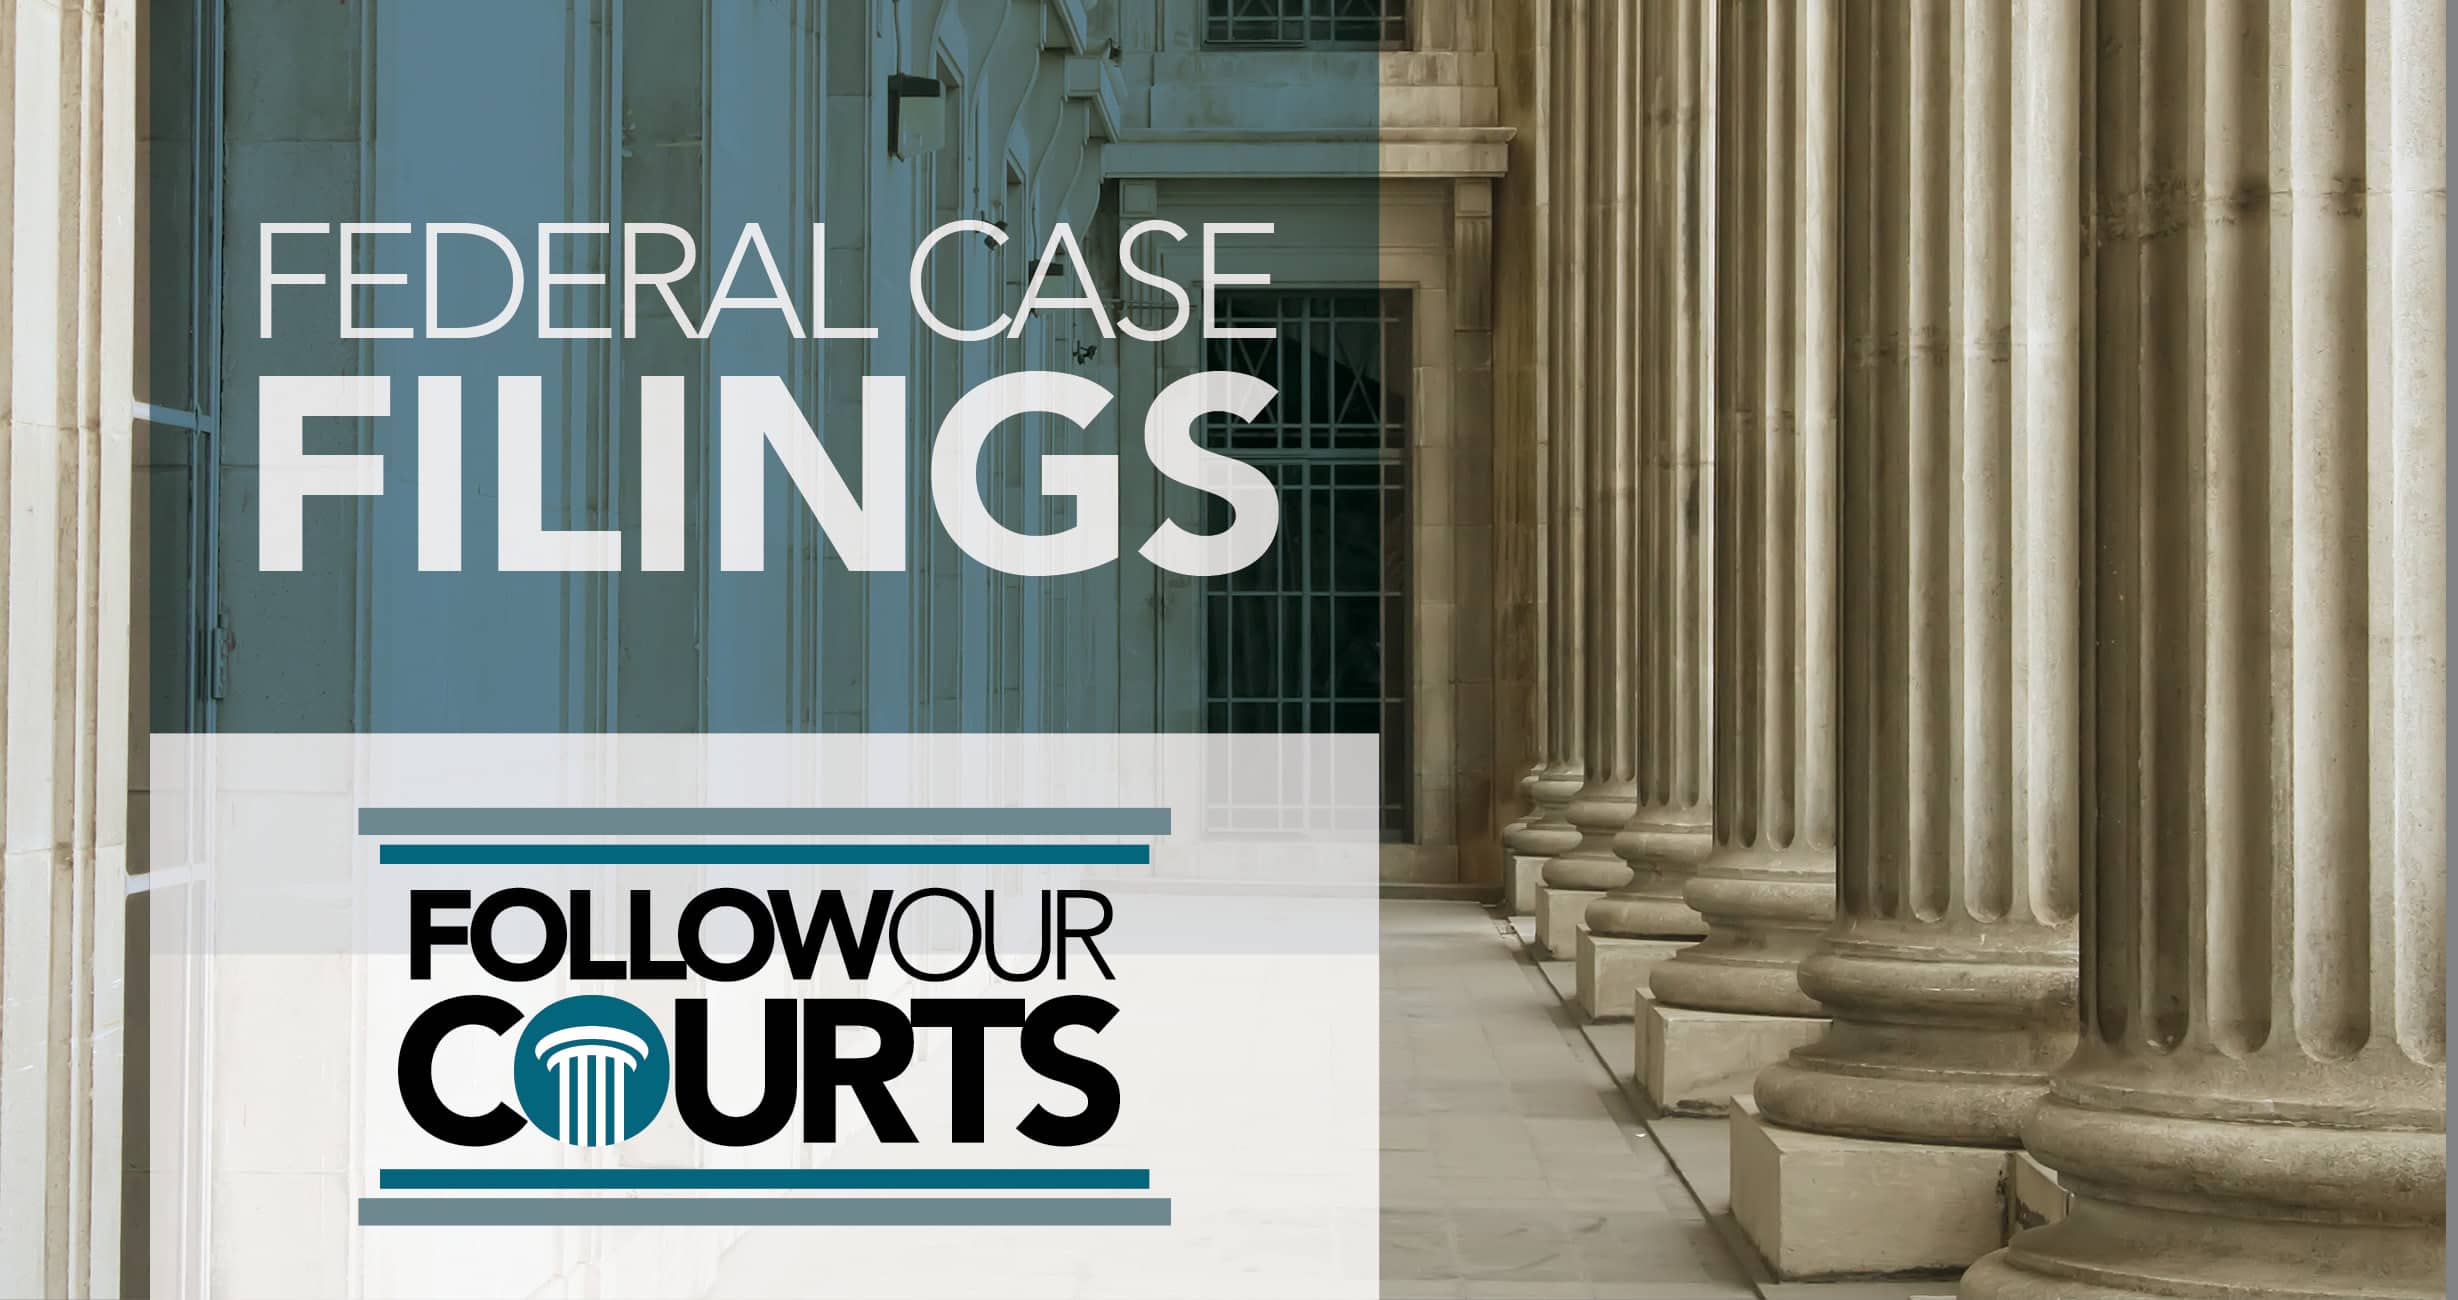 Federal case filings April 26